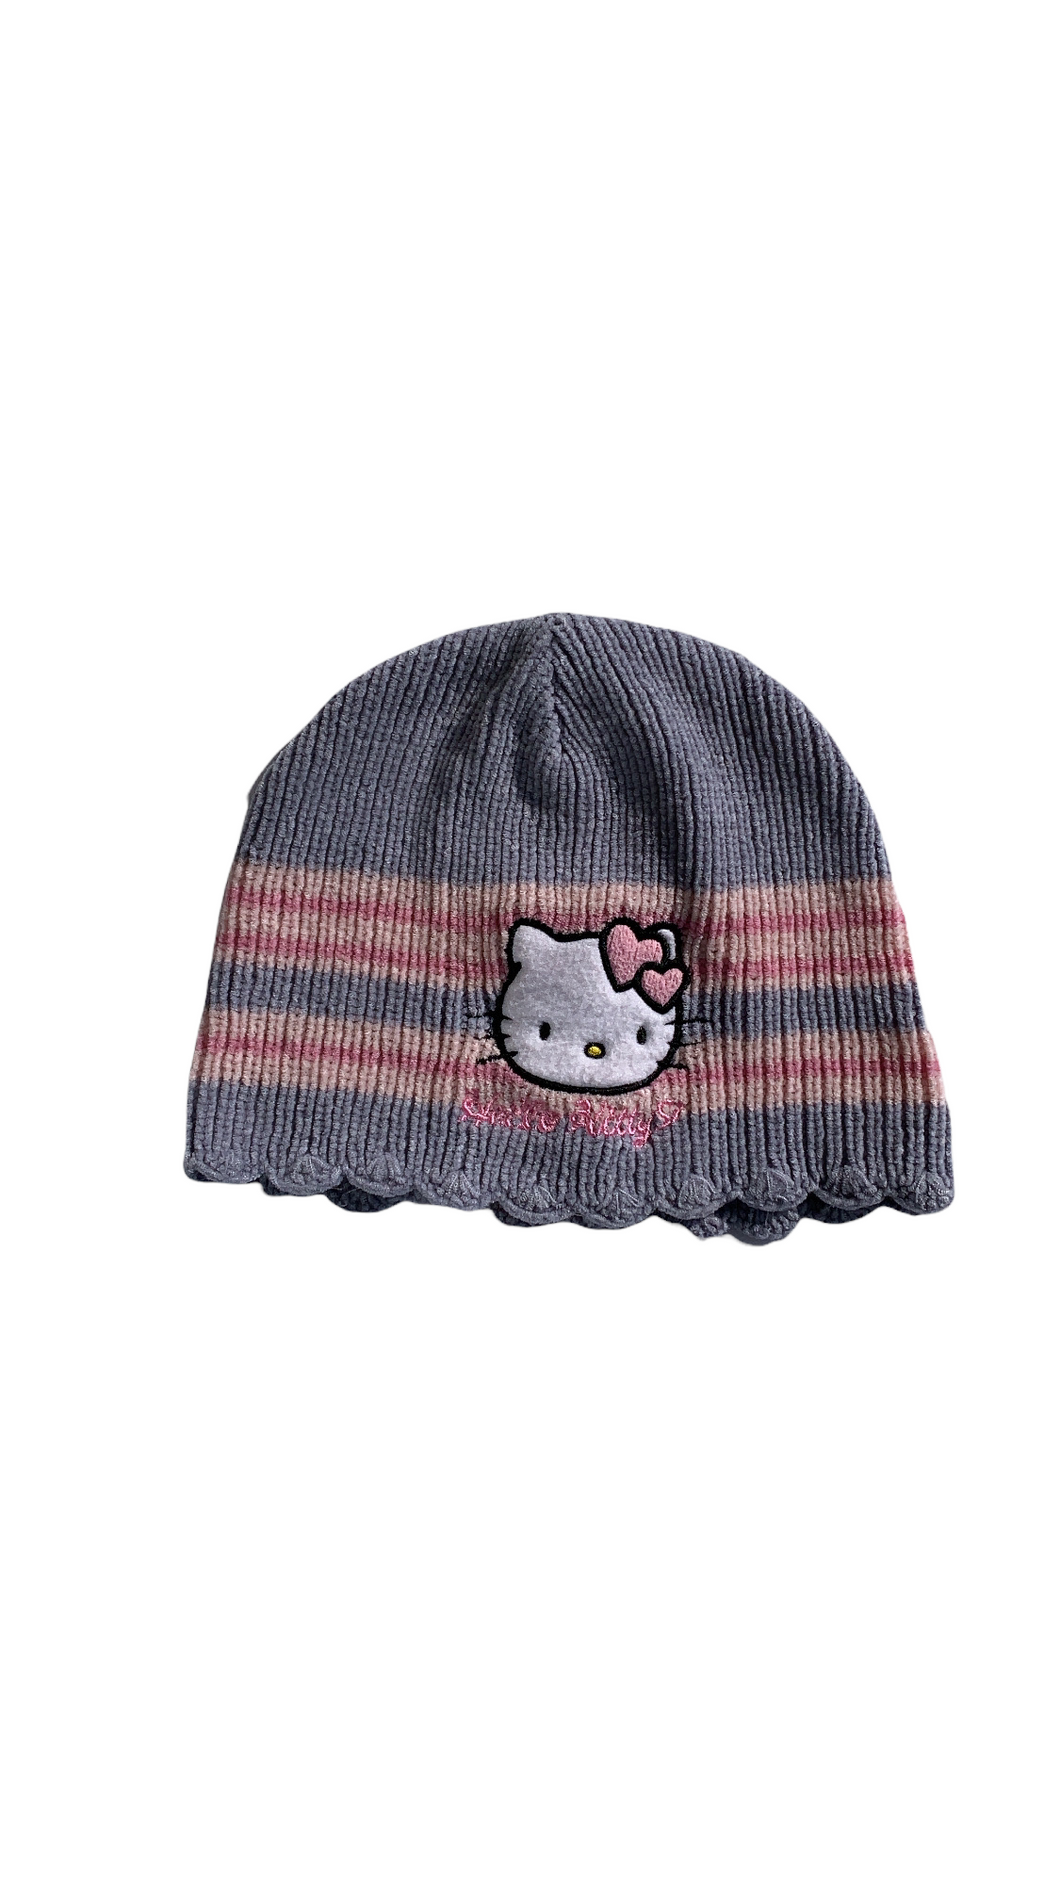 Authentic Hello Kitty cap